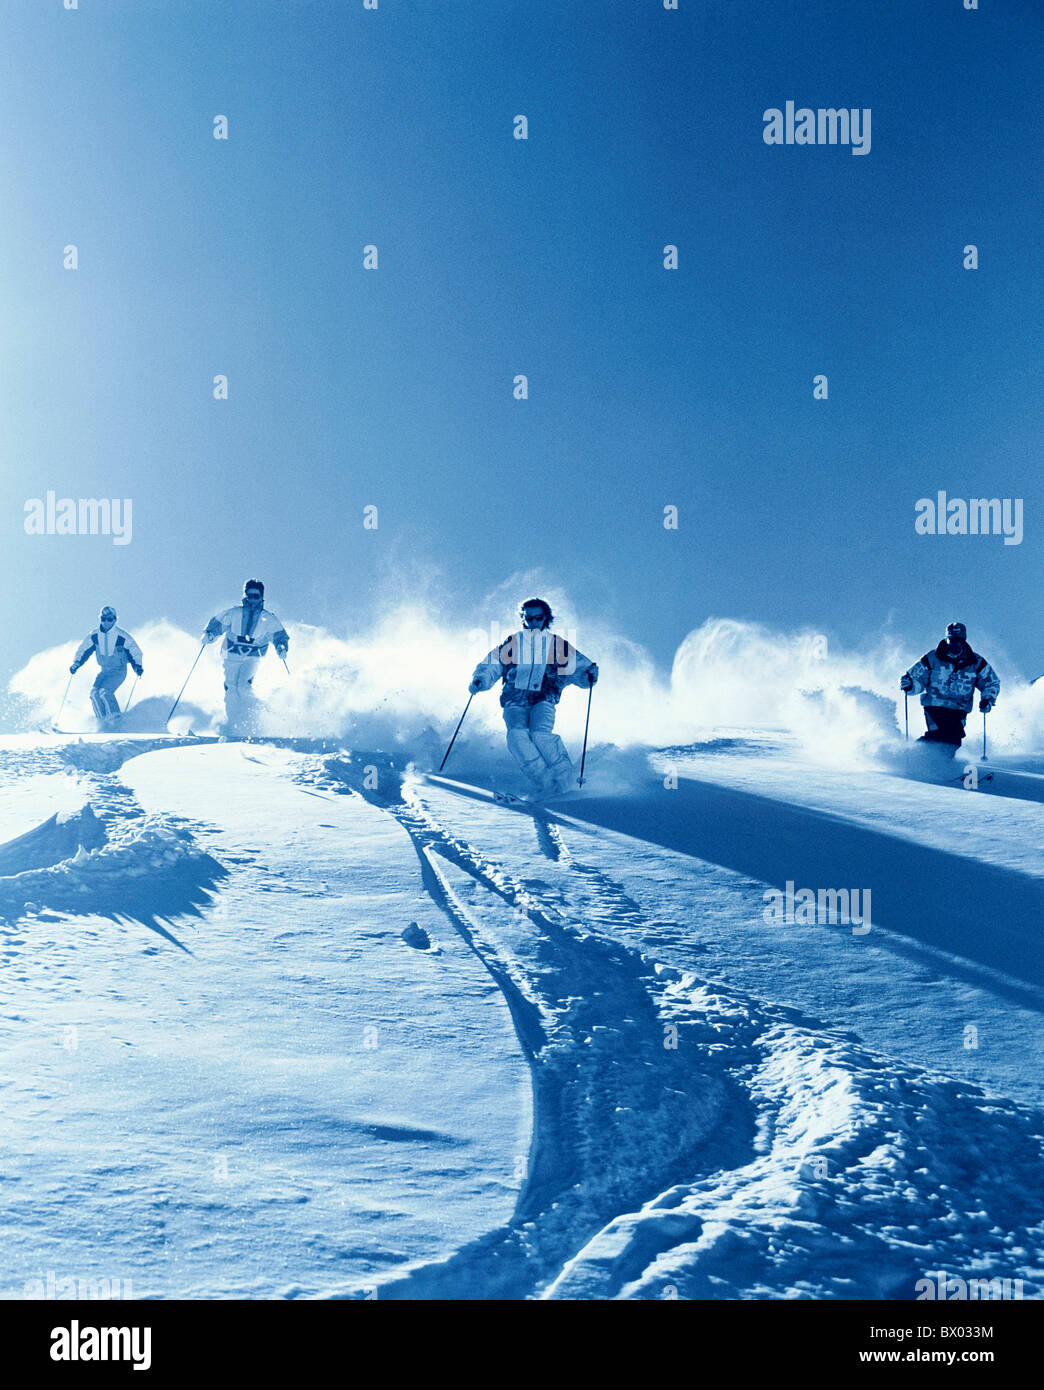 Las montañas de esquí Carving grupo monocromo en nieve esquí deporte de nieve profunda nieve profunda la conducción invernales s Foto de stock